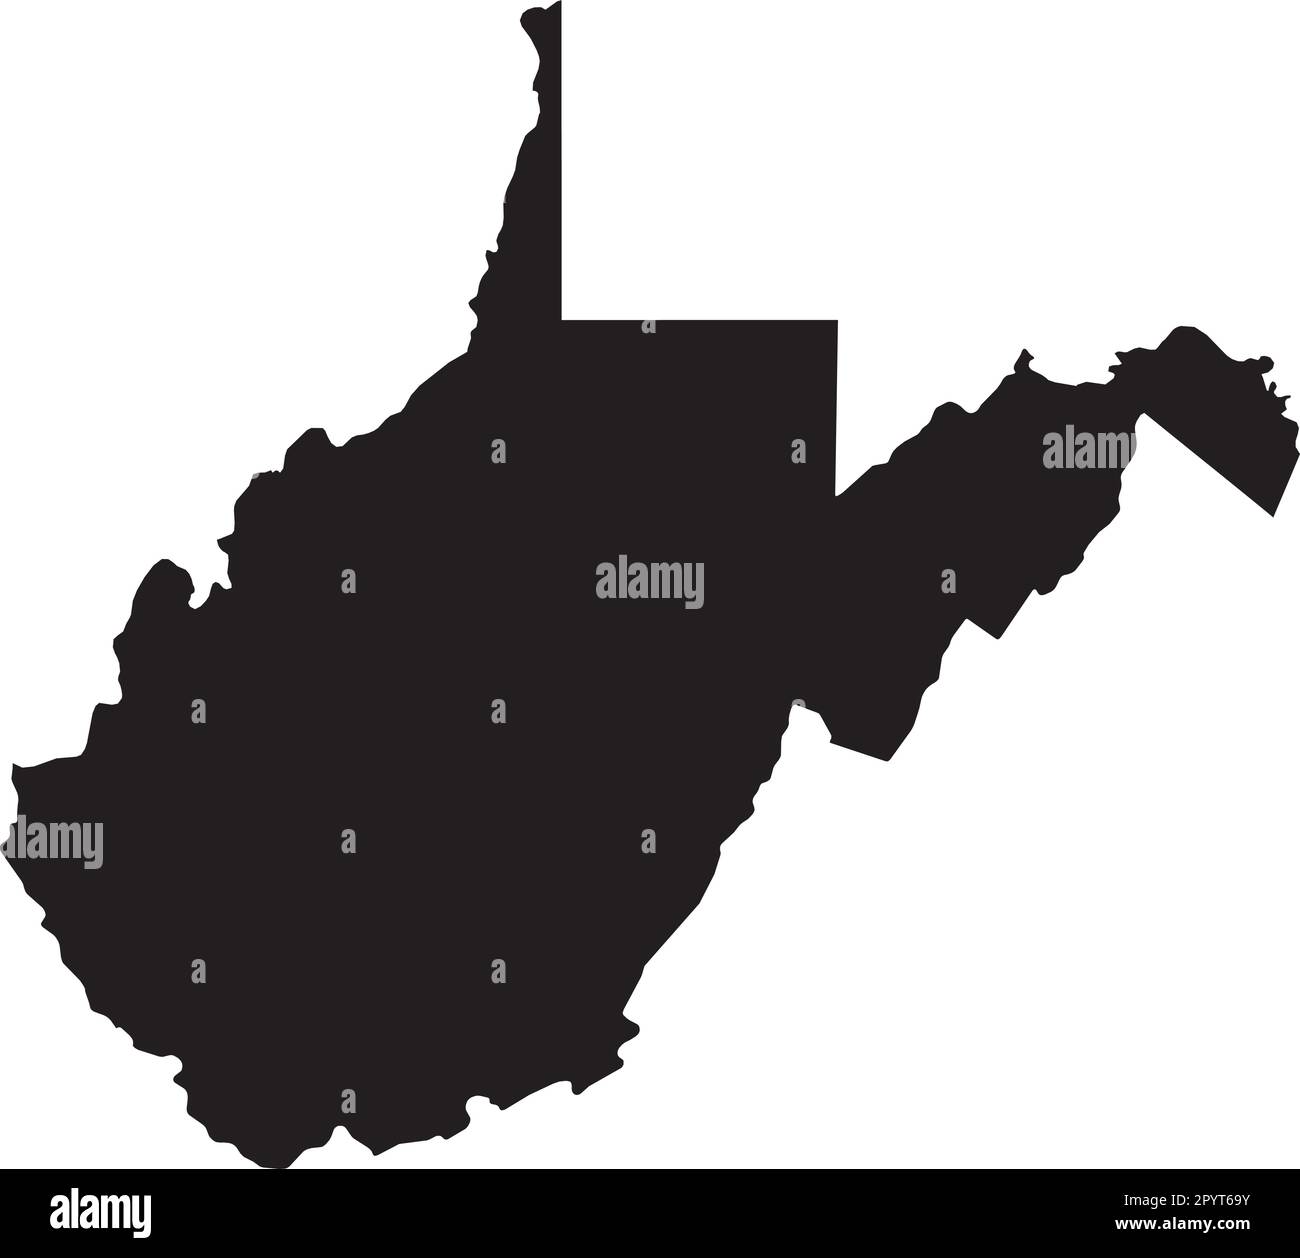 Mappa dei colori CMYK NERO della WEST VIRGINIA, USA Illustrazione Vettoriale